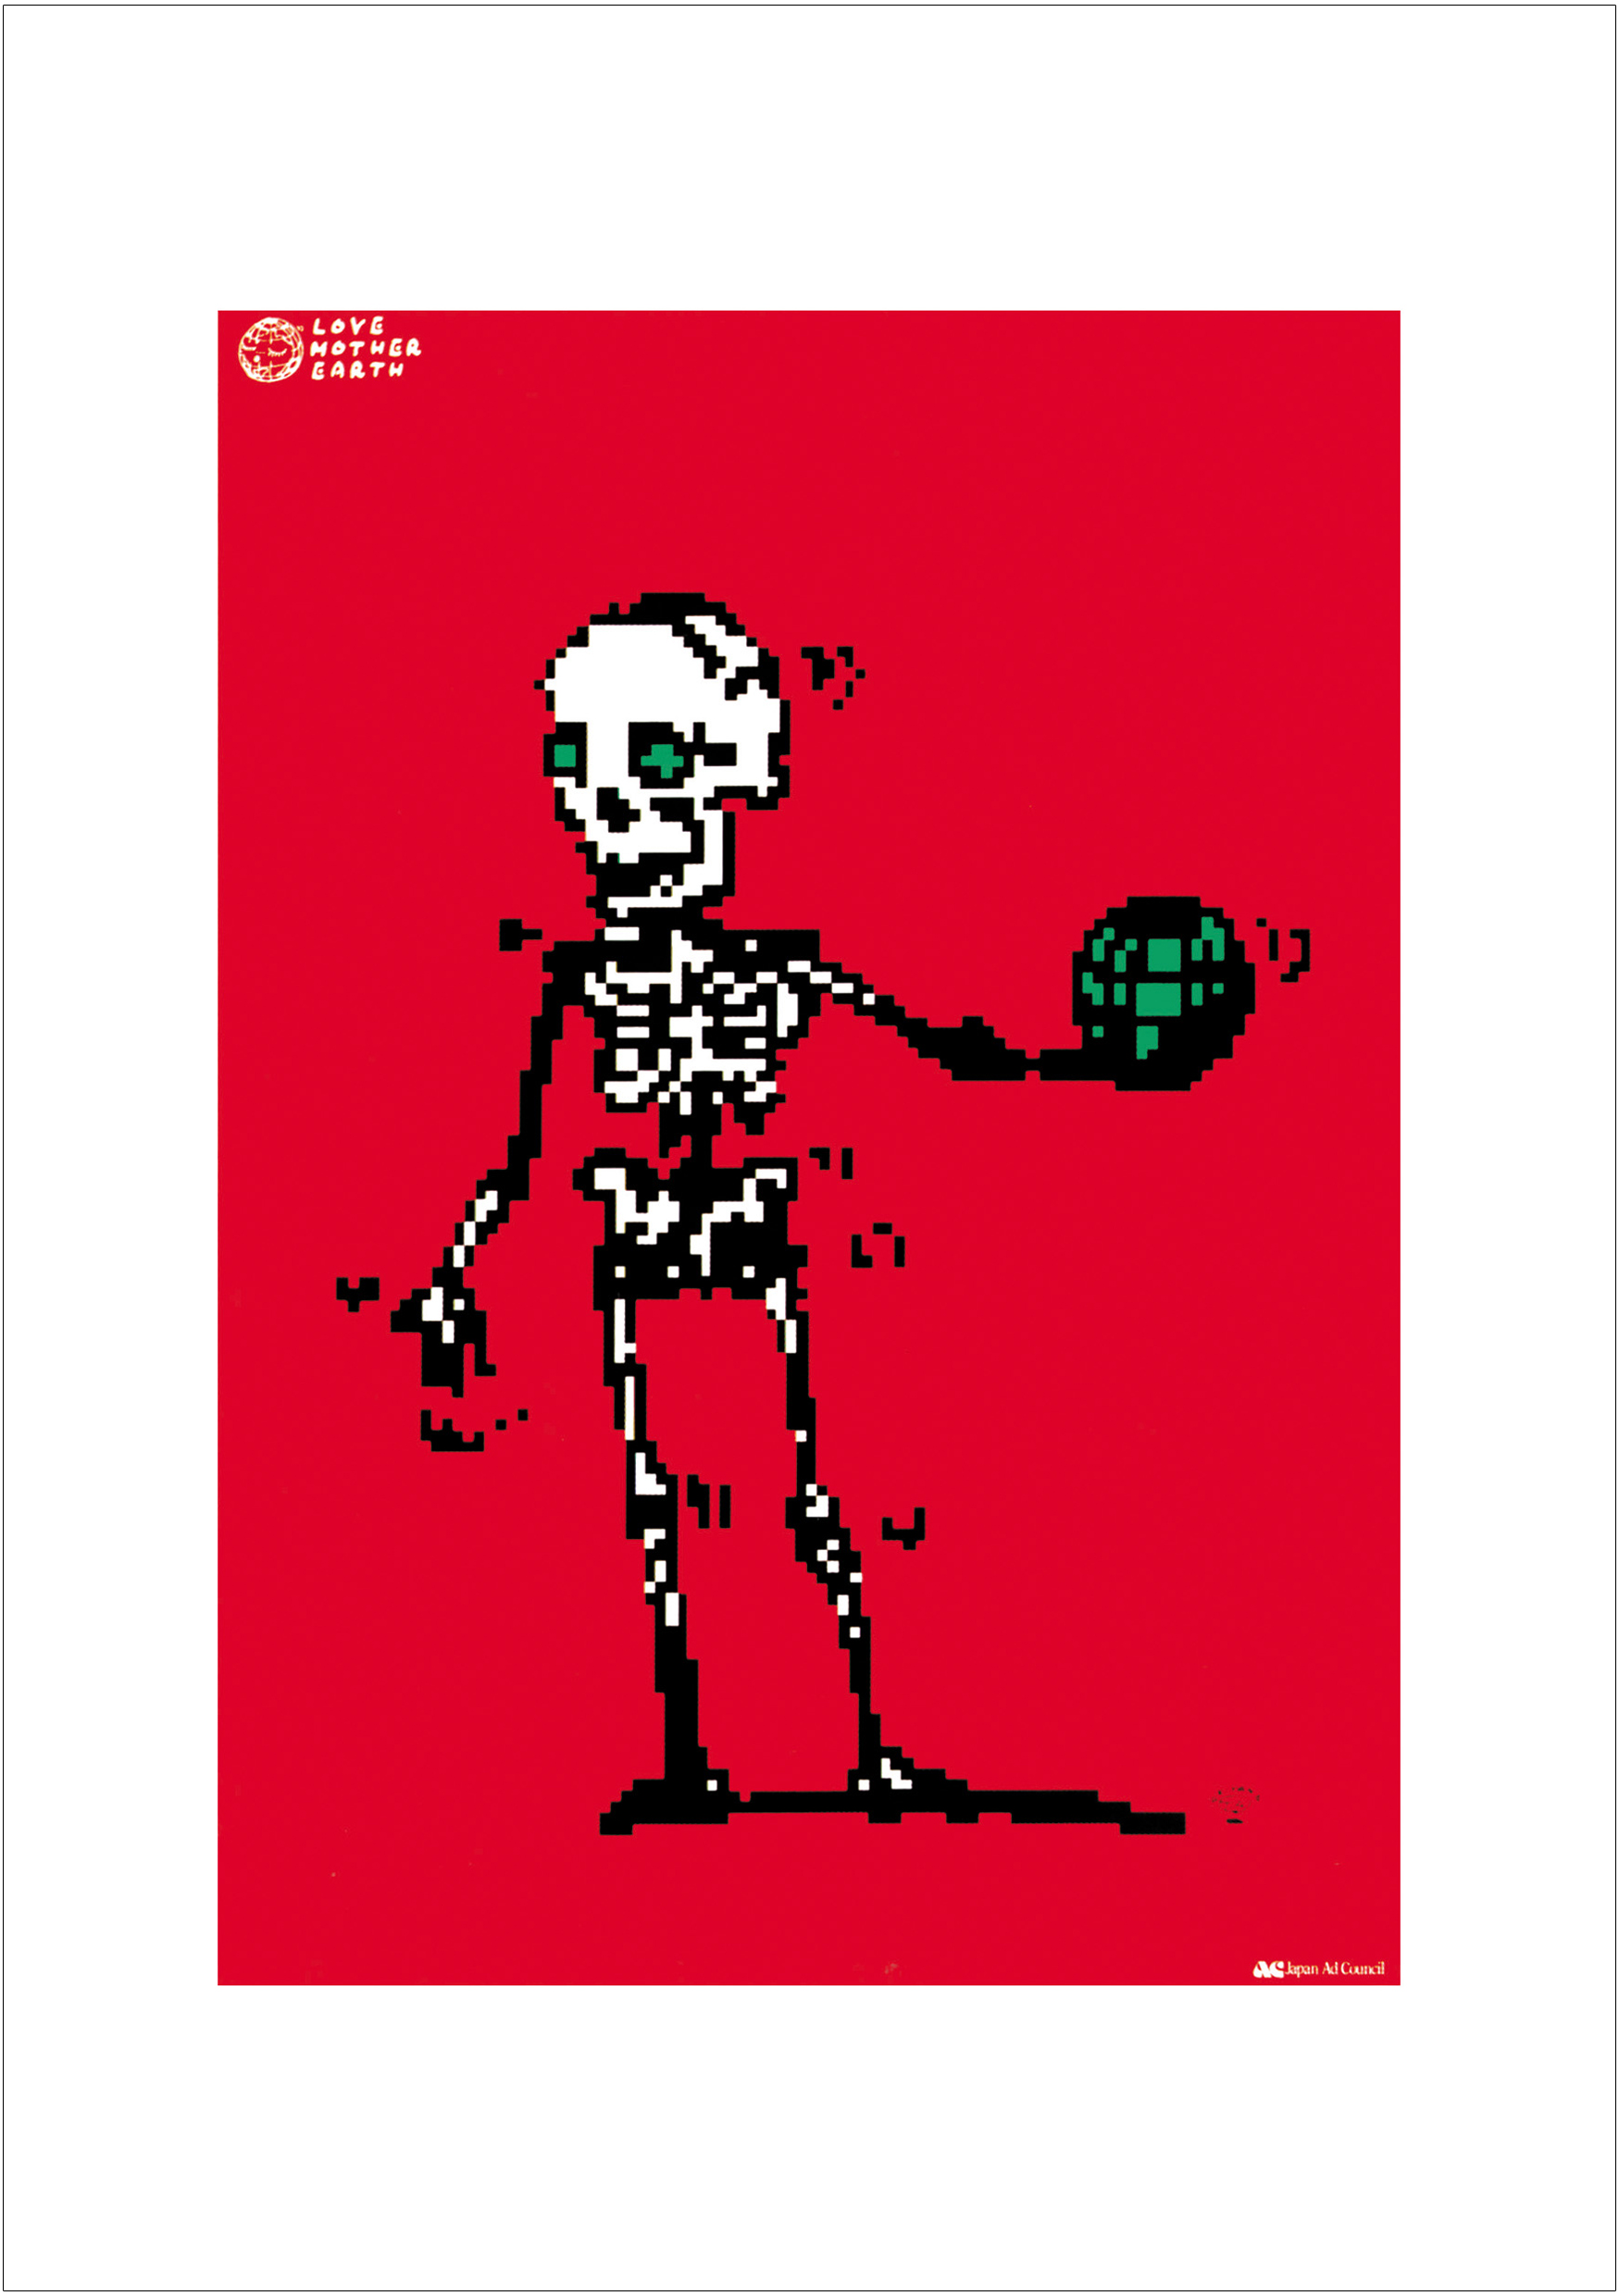 ポスターアーティスト秋山孝が2008年に制作したアートカード「アートカード ポスター 1991 13」